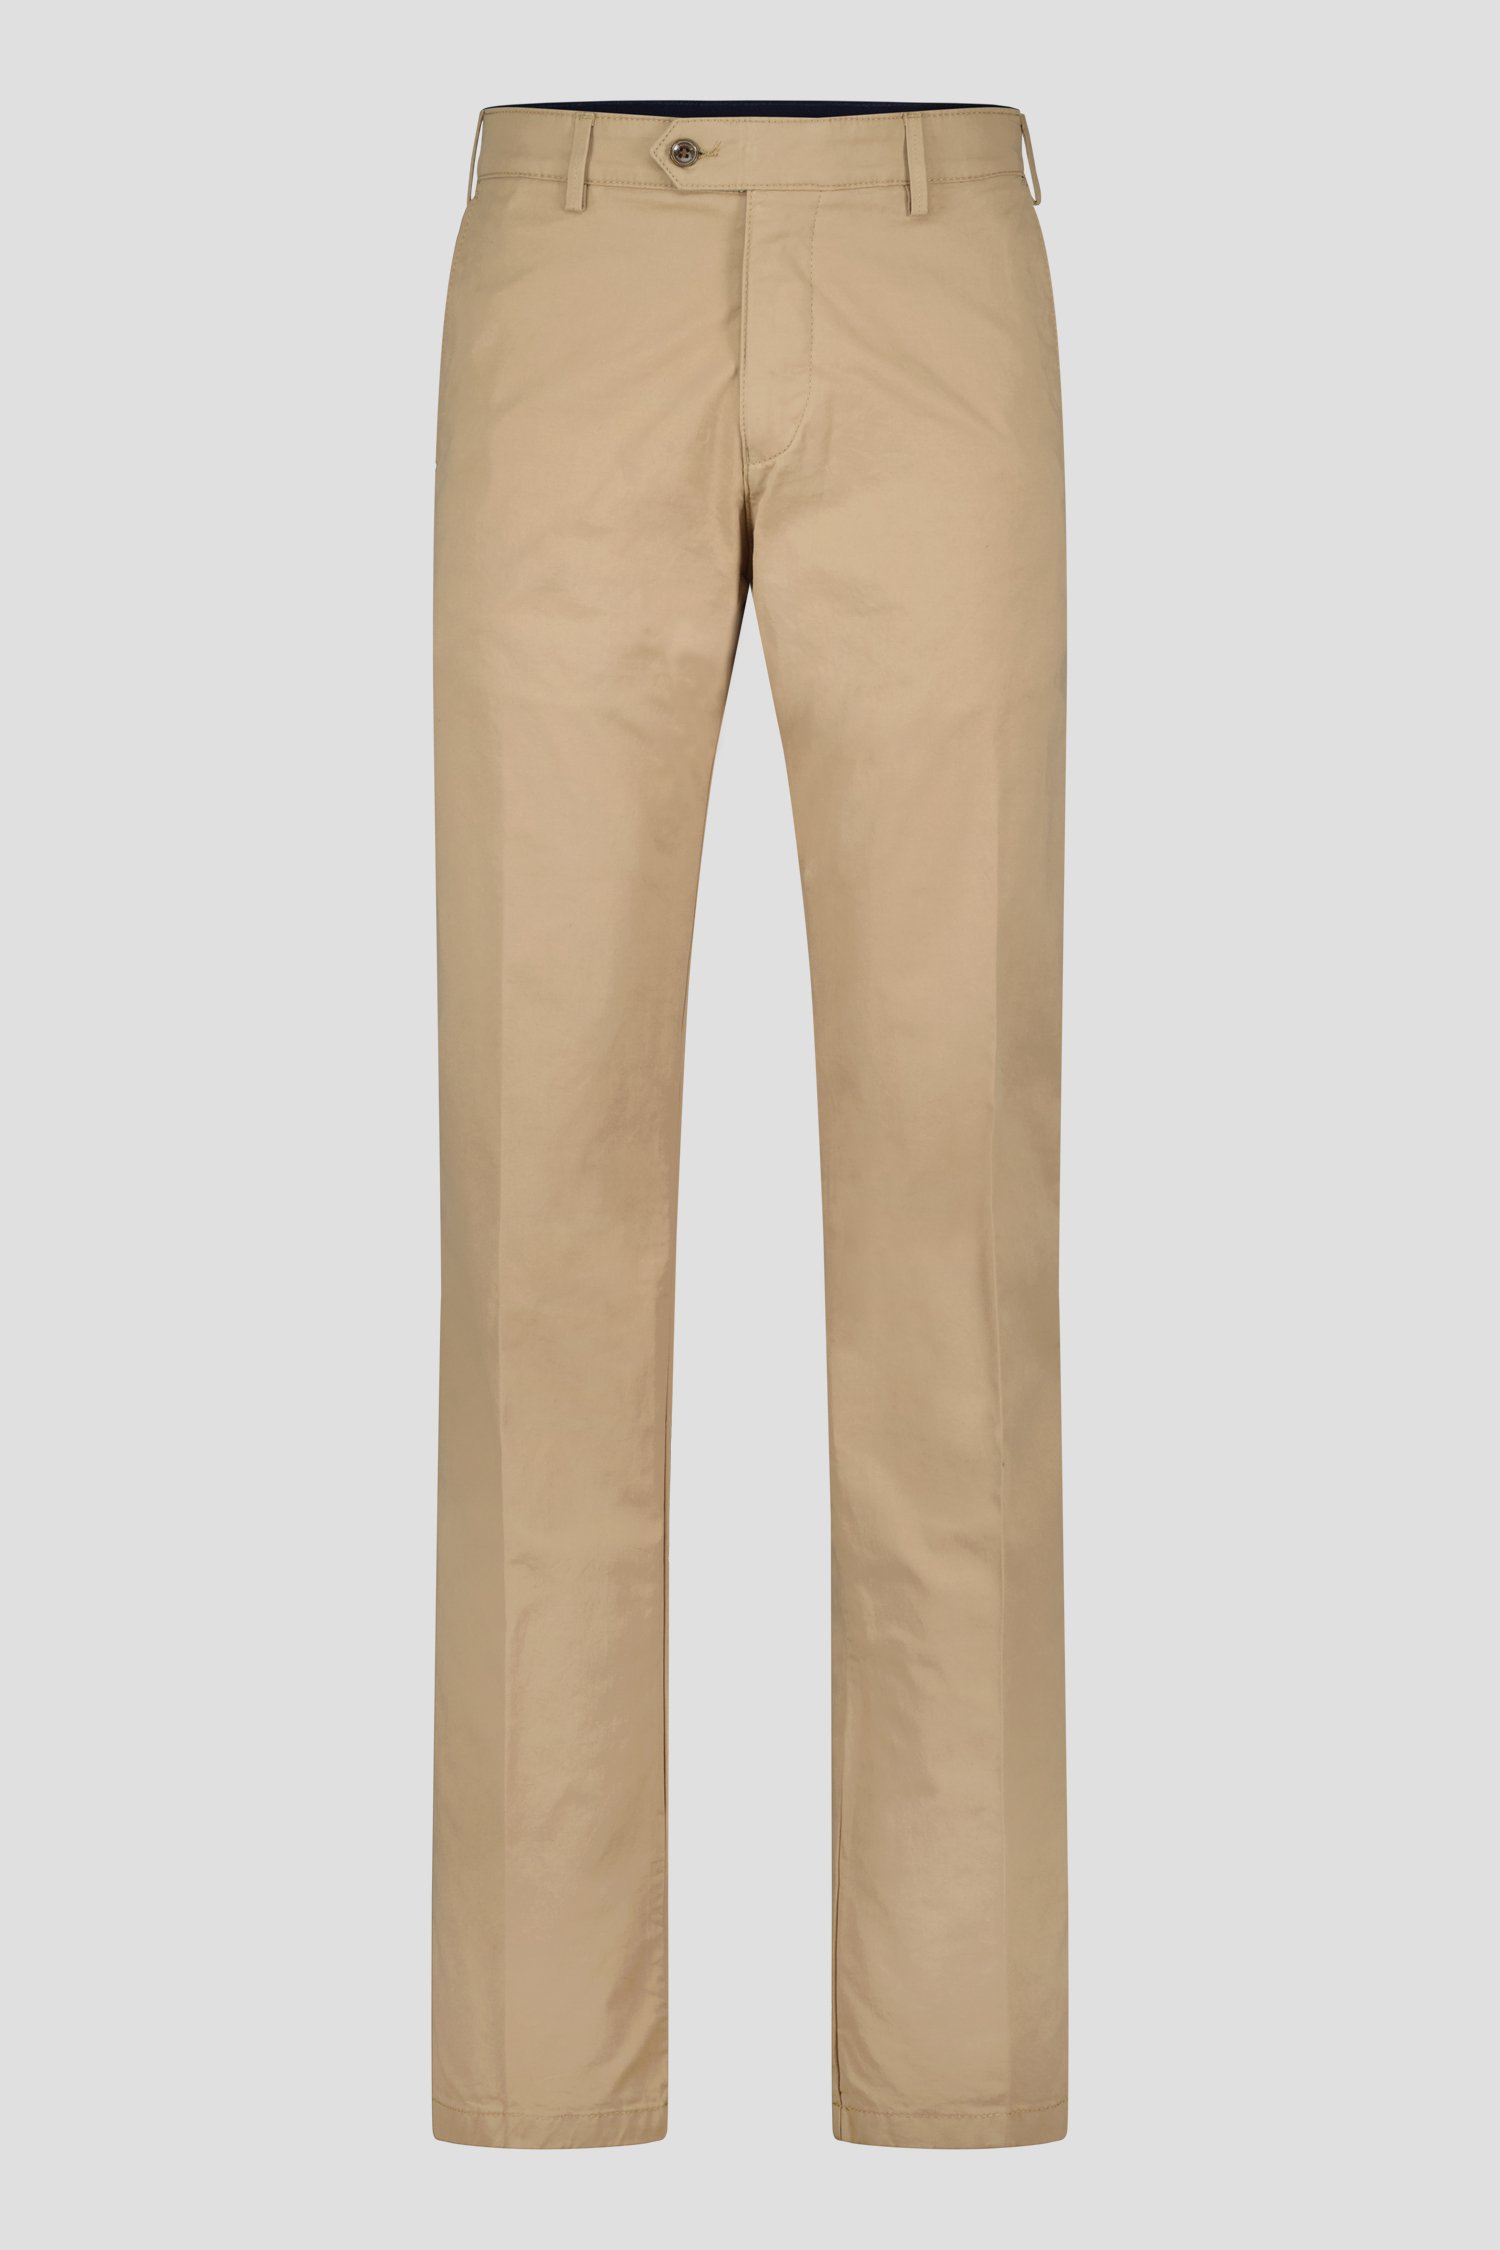 Pantalon chino beige - Vancouver - Regular fit de Brassville pour Hommes